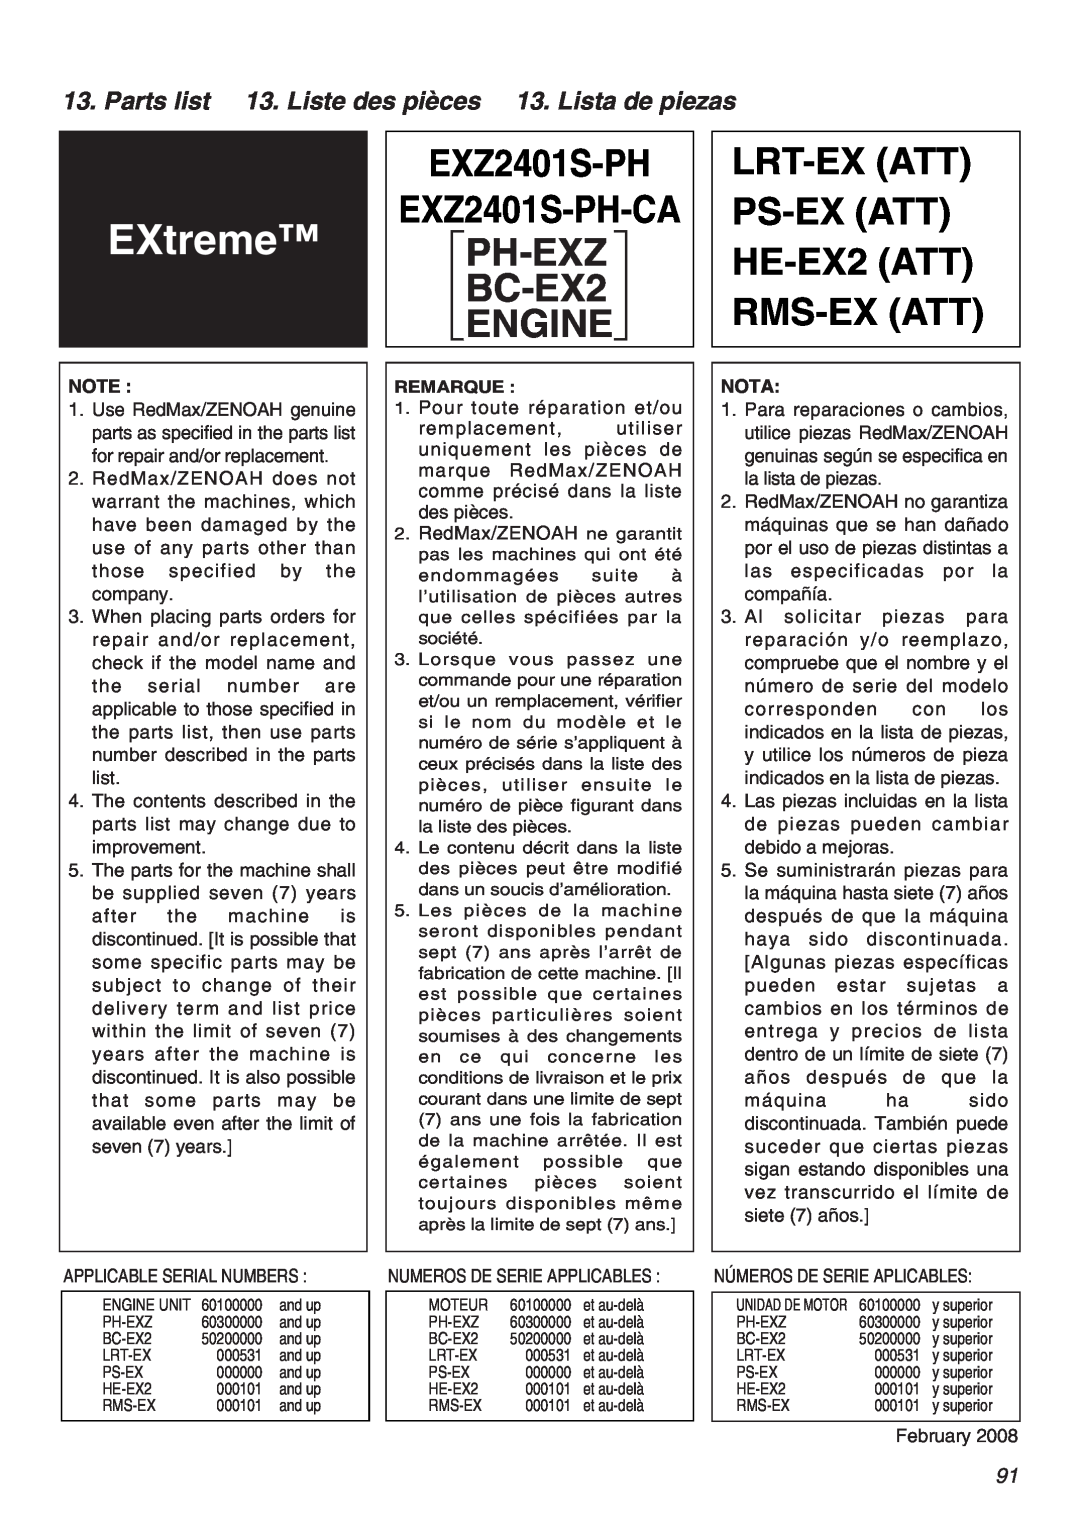 RedMax EXZ2401S-PH manual LRT-EX ATT PS-EX ATT HE-EX2 ATT RMS-EX ATT, Parts list 13. Liste des pièces 13. Lista de piezas 